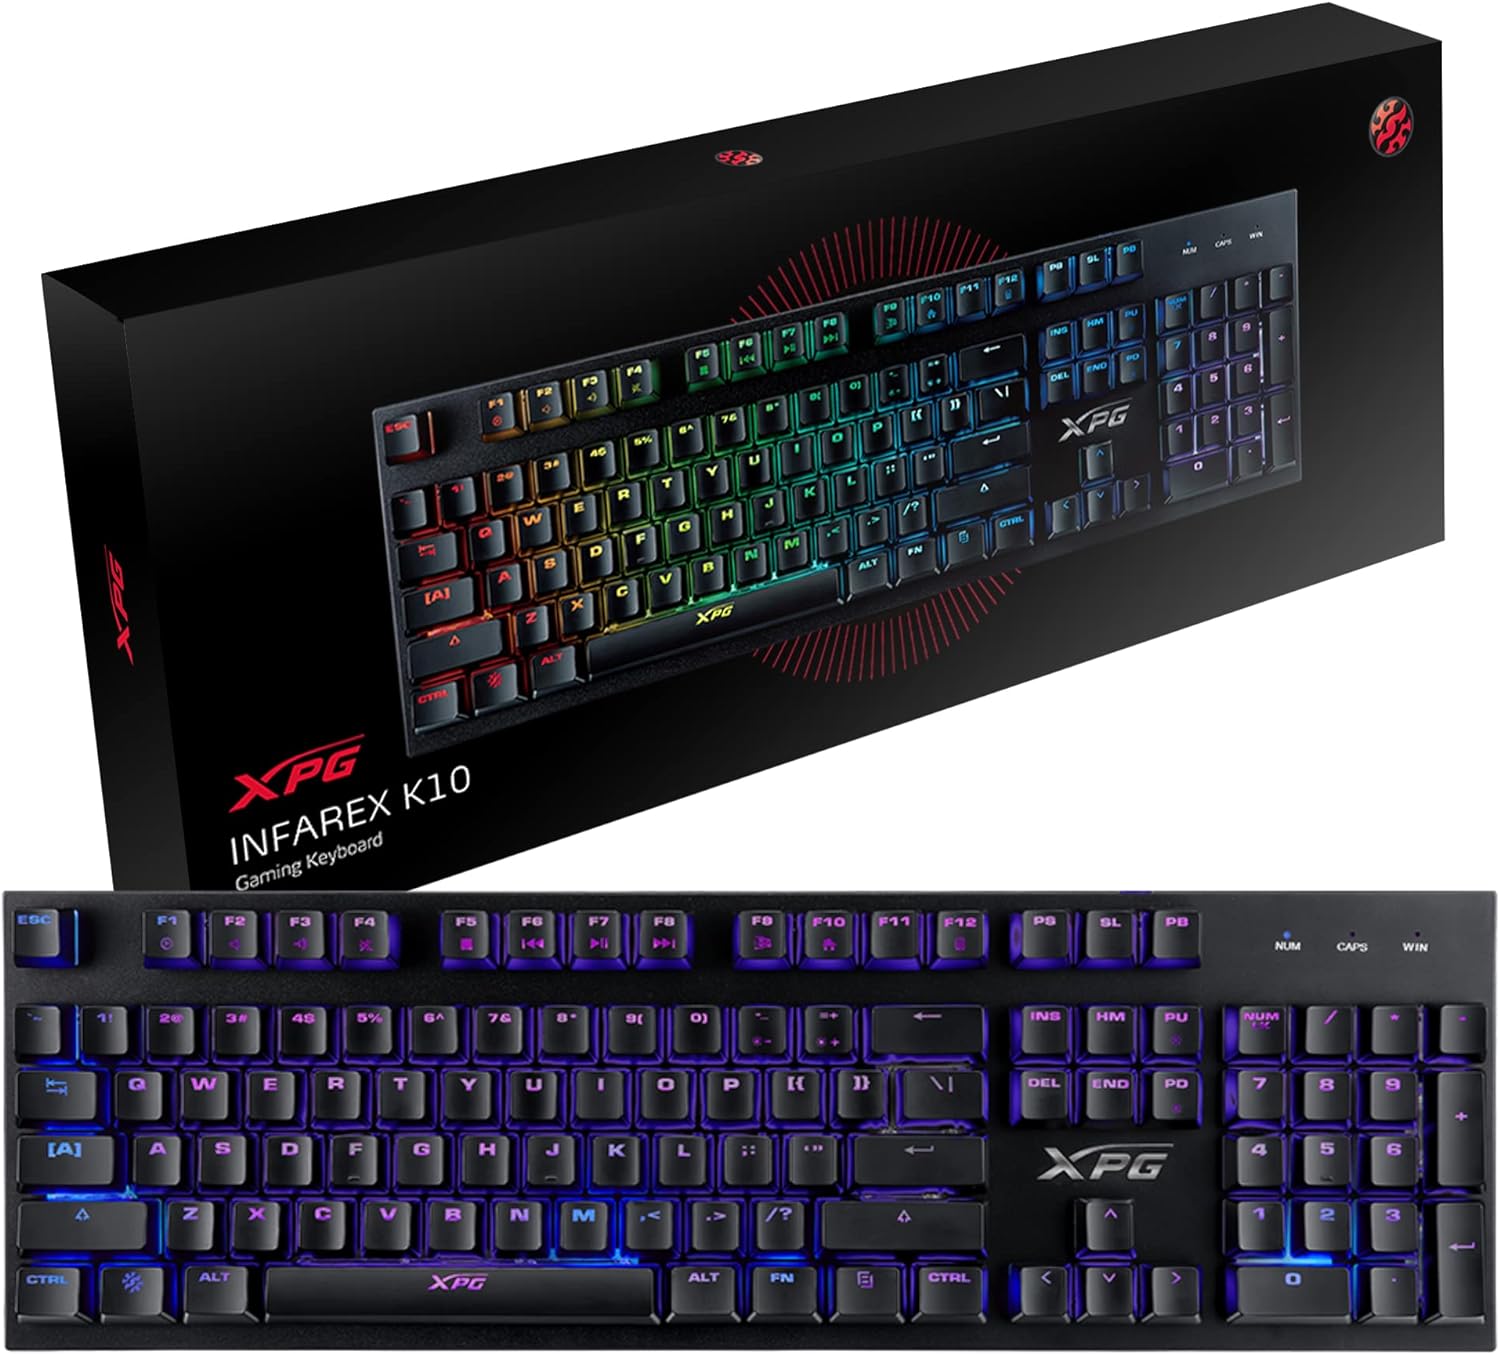 Xpg Wired Gaming Keyboard, Black - Infarex K10